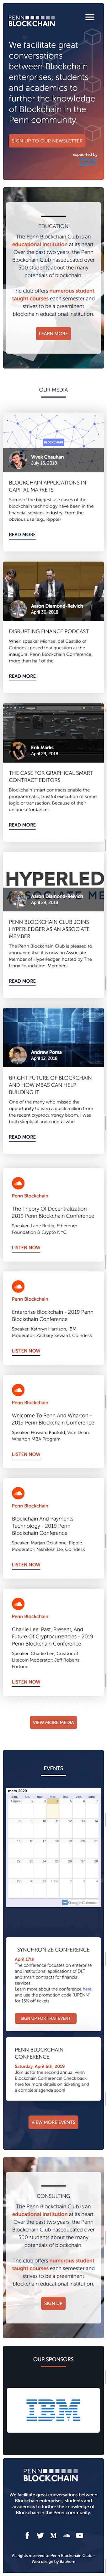 webflow project 2 - Penn Blockchain